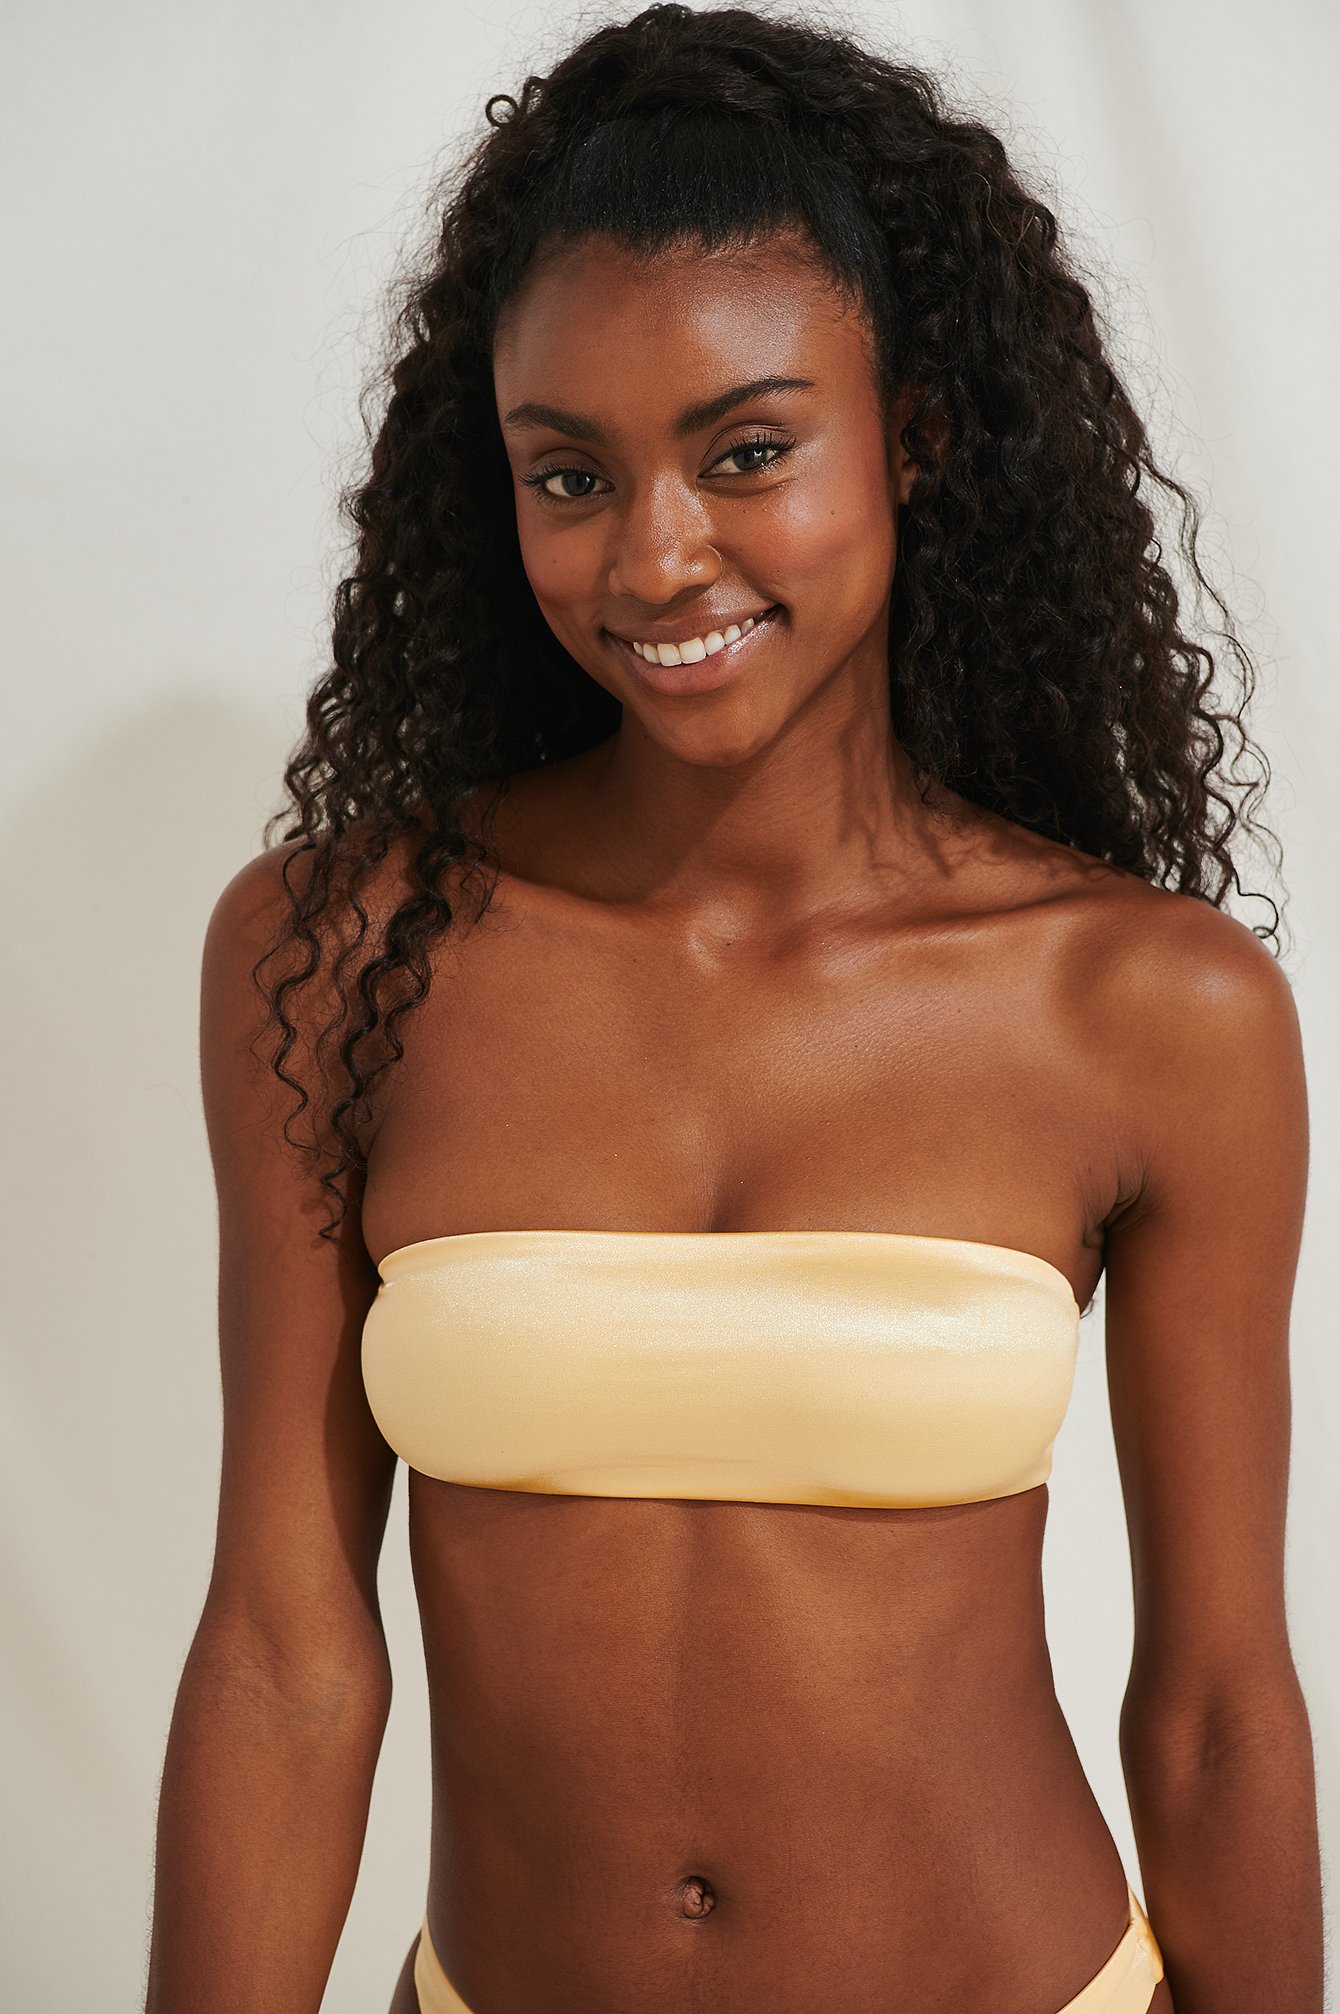 Yellow Bandeau Bikini Top